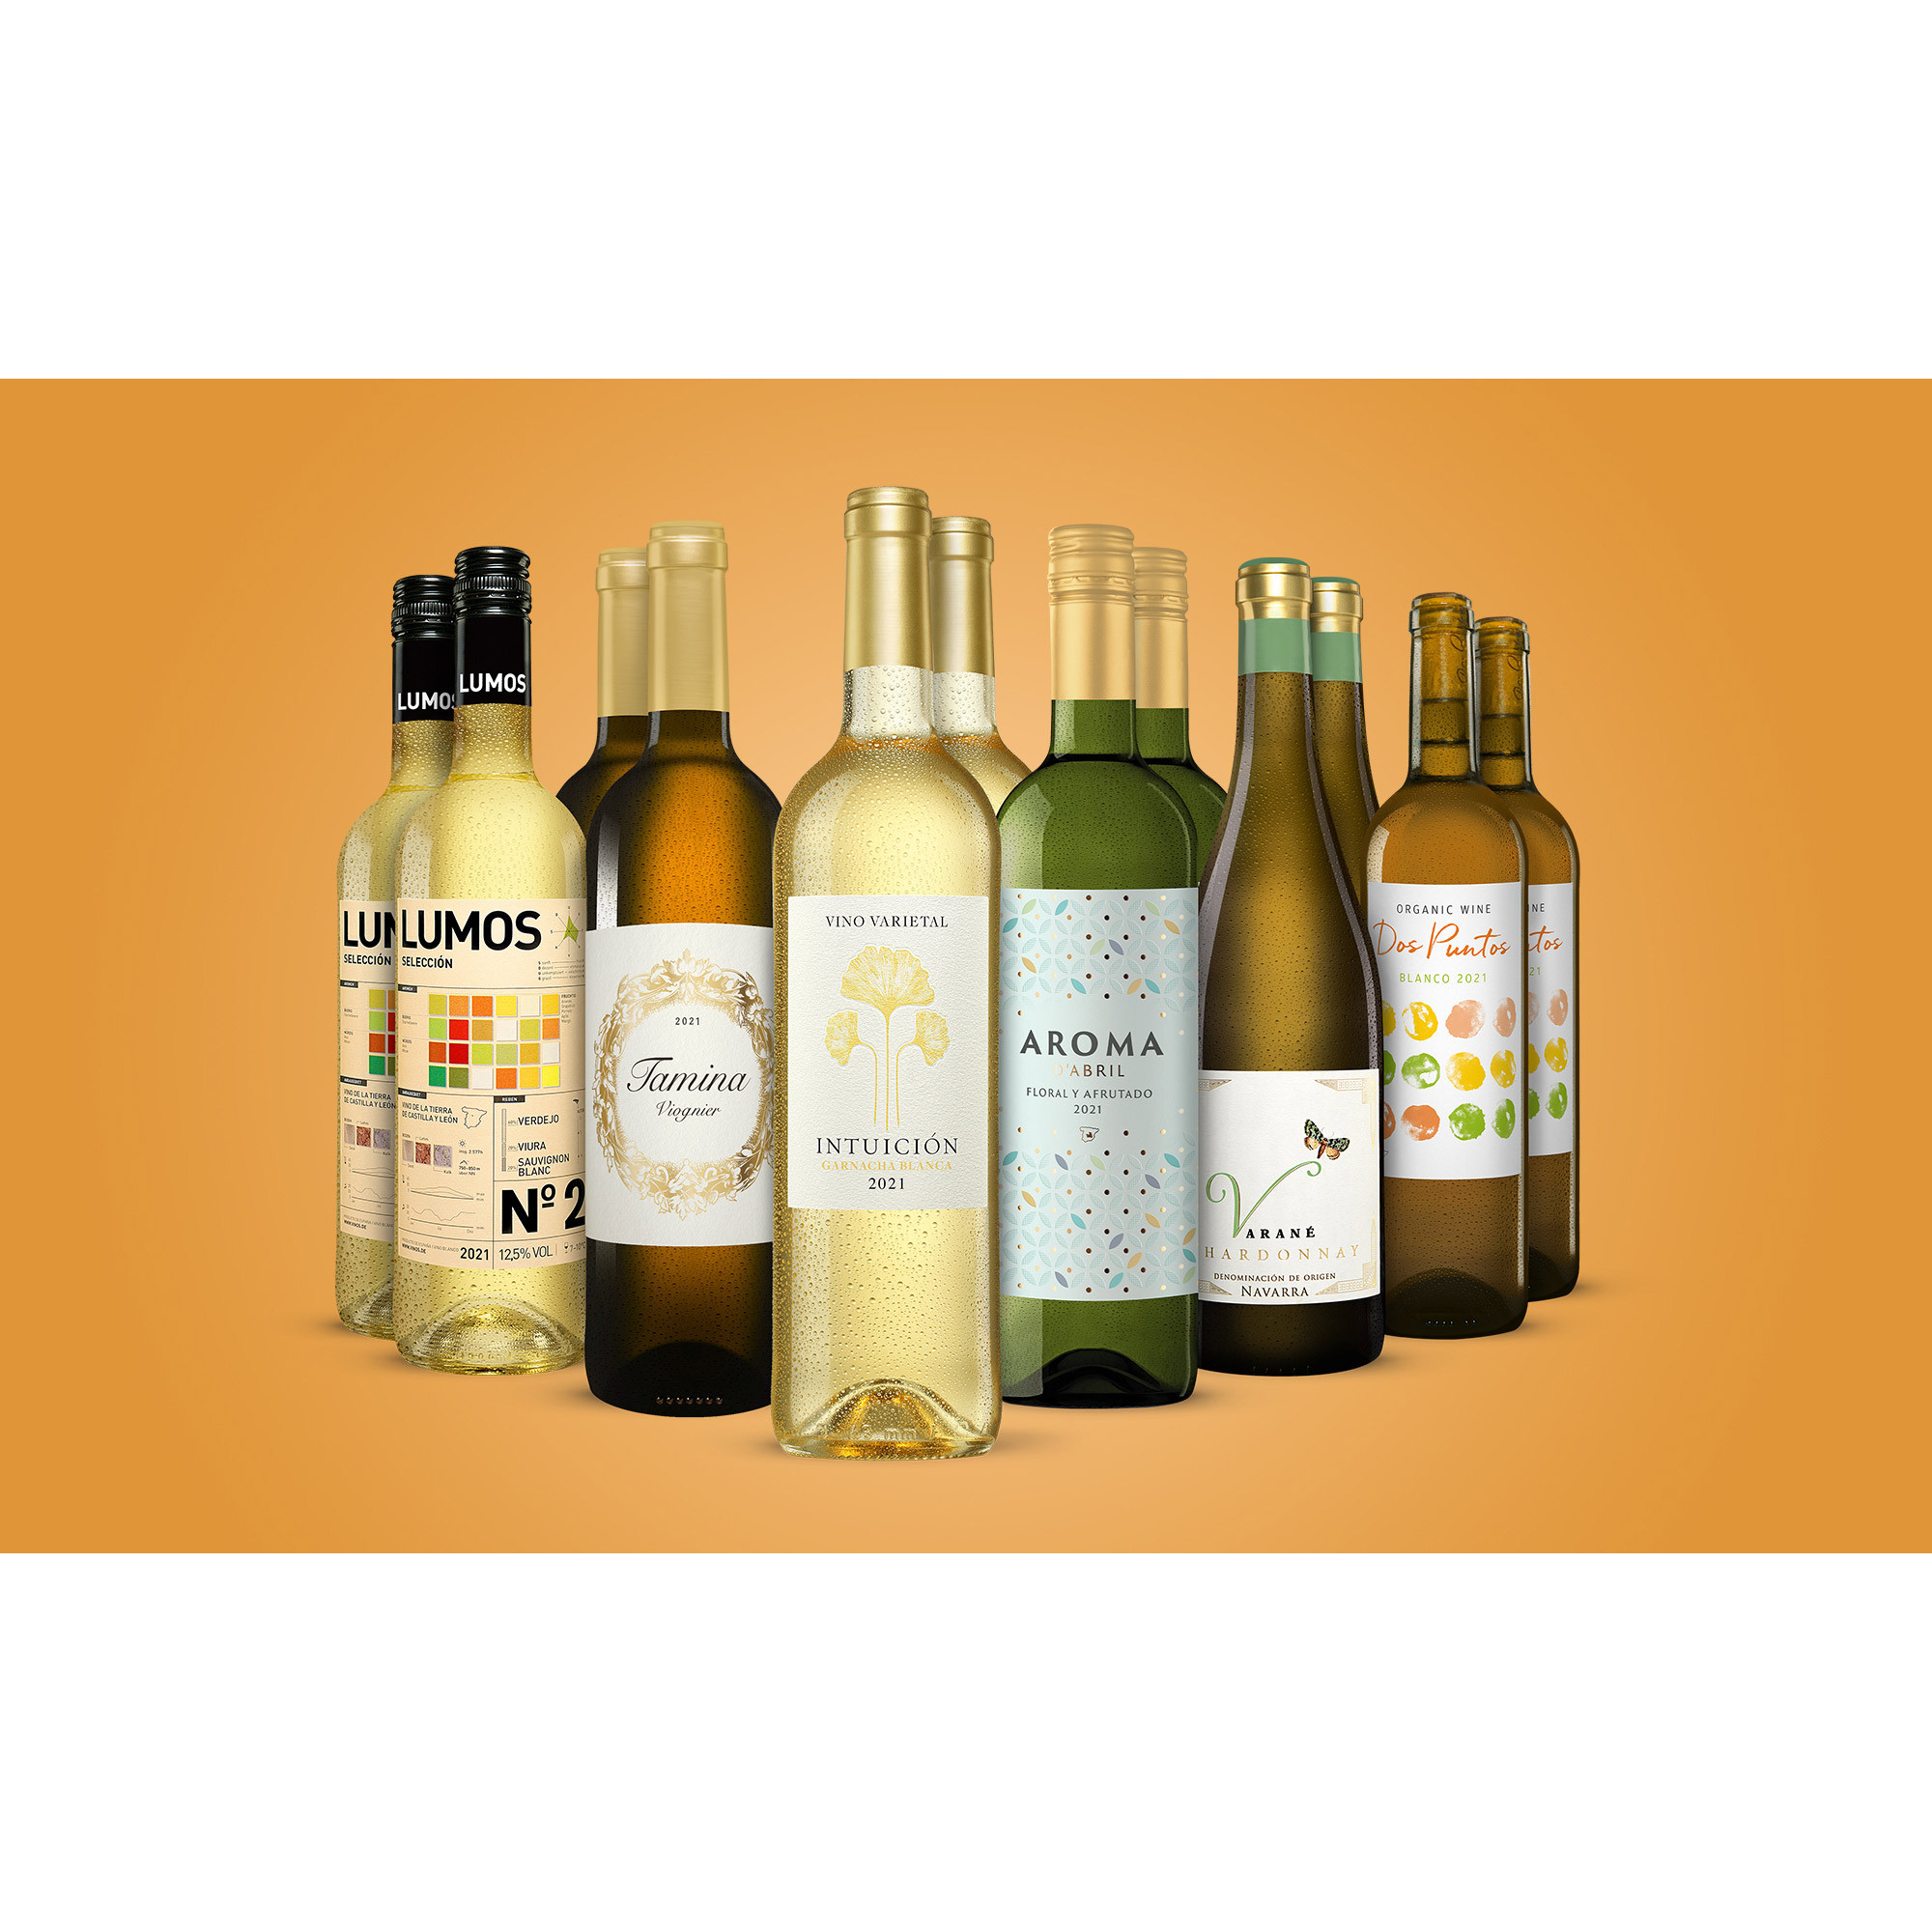 Weißwein-Genießer-Paket  9L Weinpaket aus Spanien 33483 vinos DE